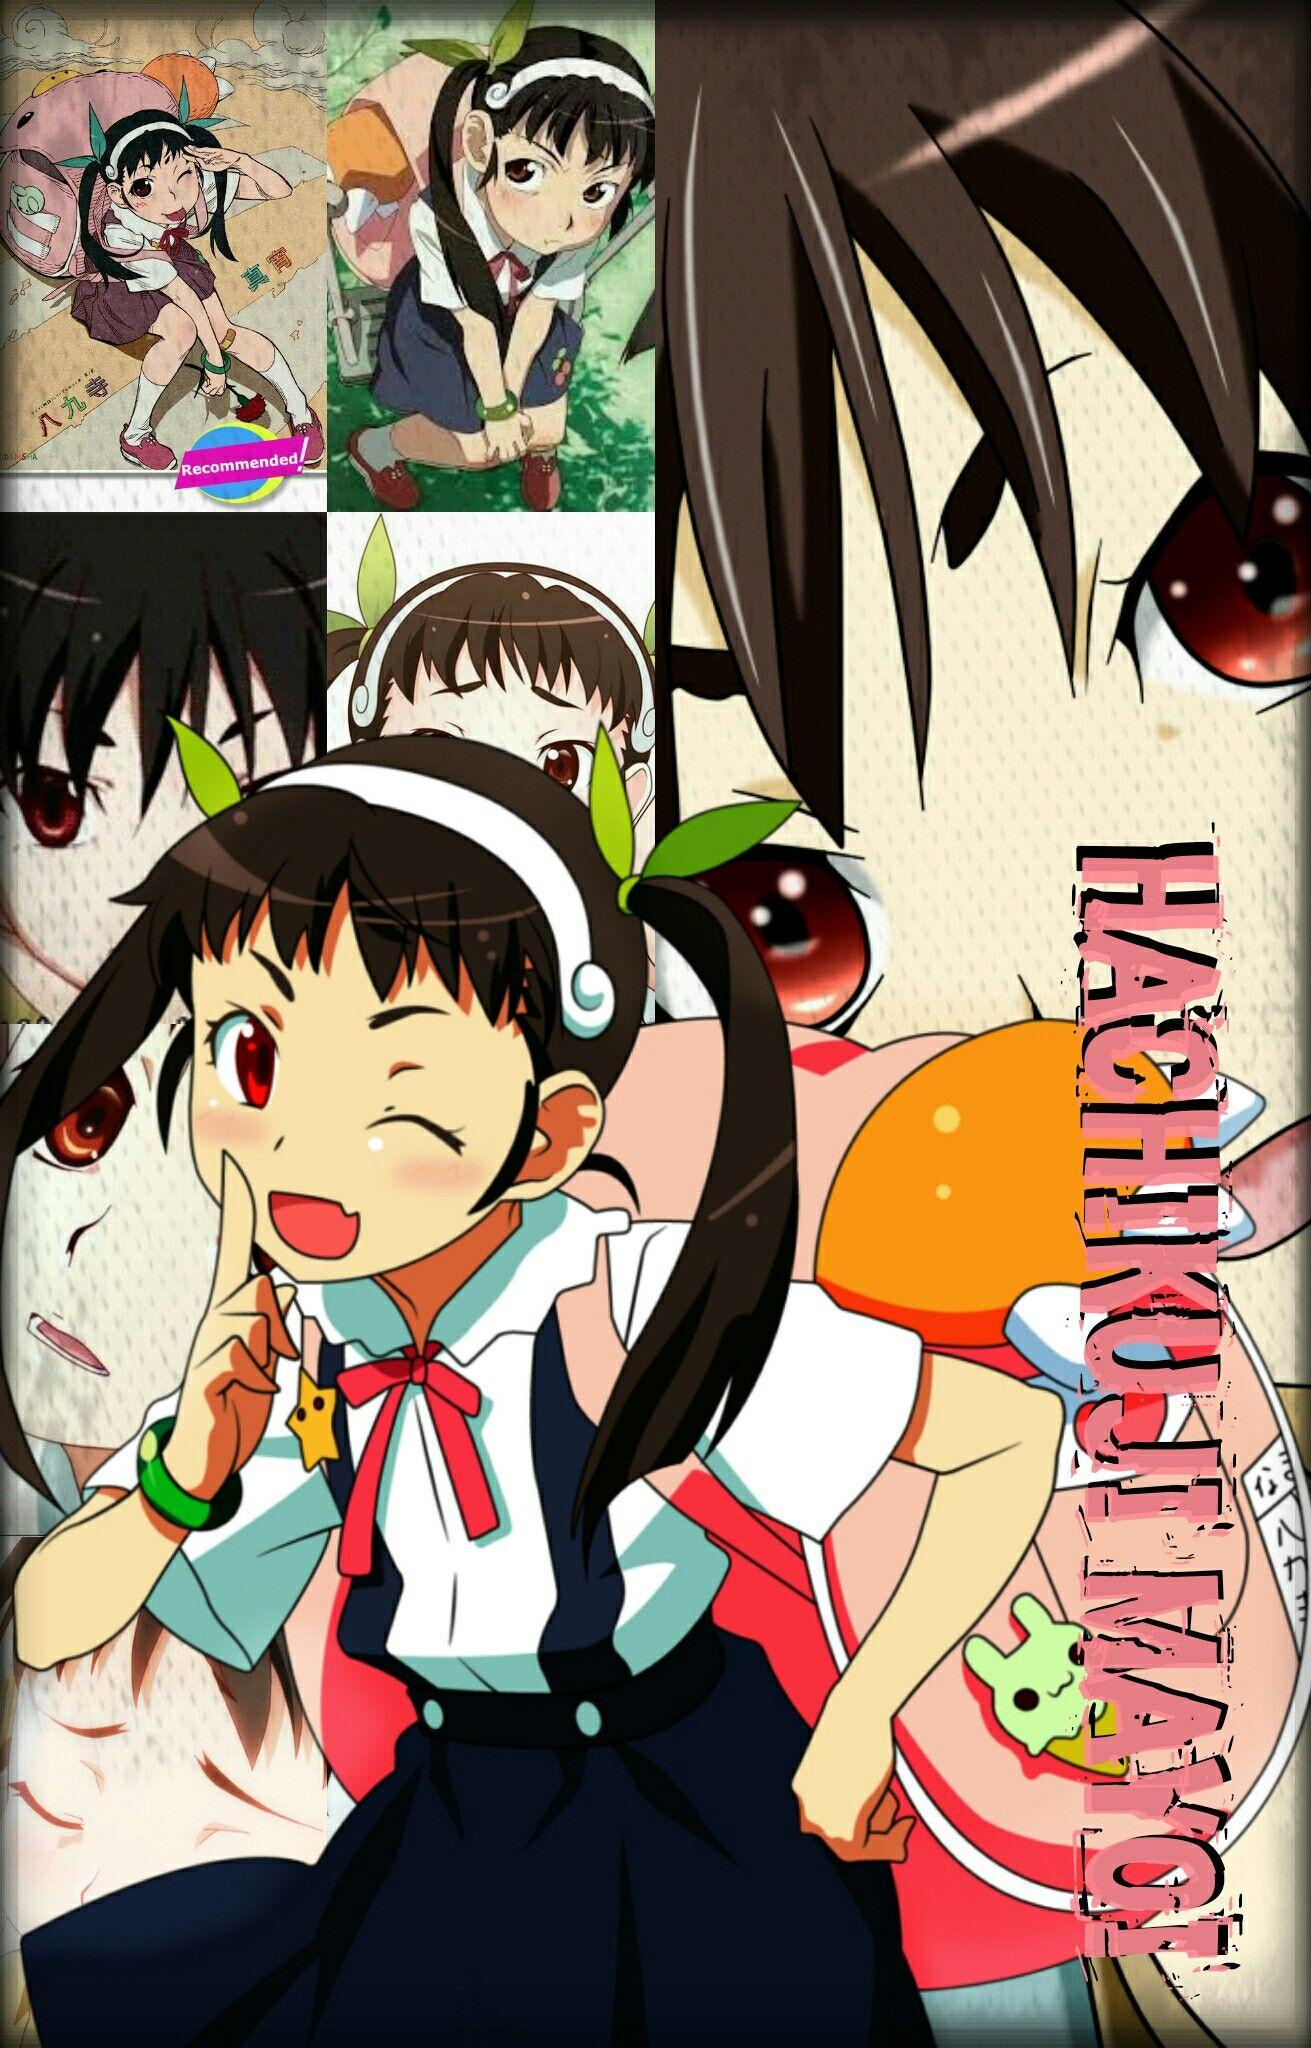 Hachikuji Mayoi. Monogatari Series Anime #wallpaper #fondos #waifu